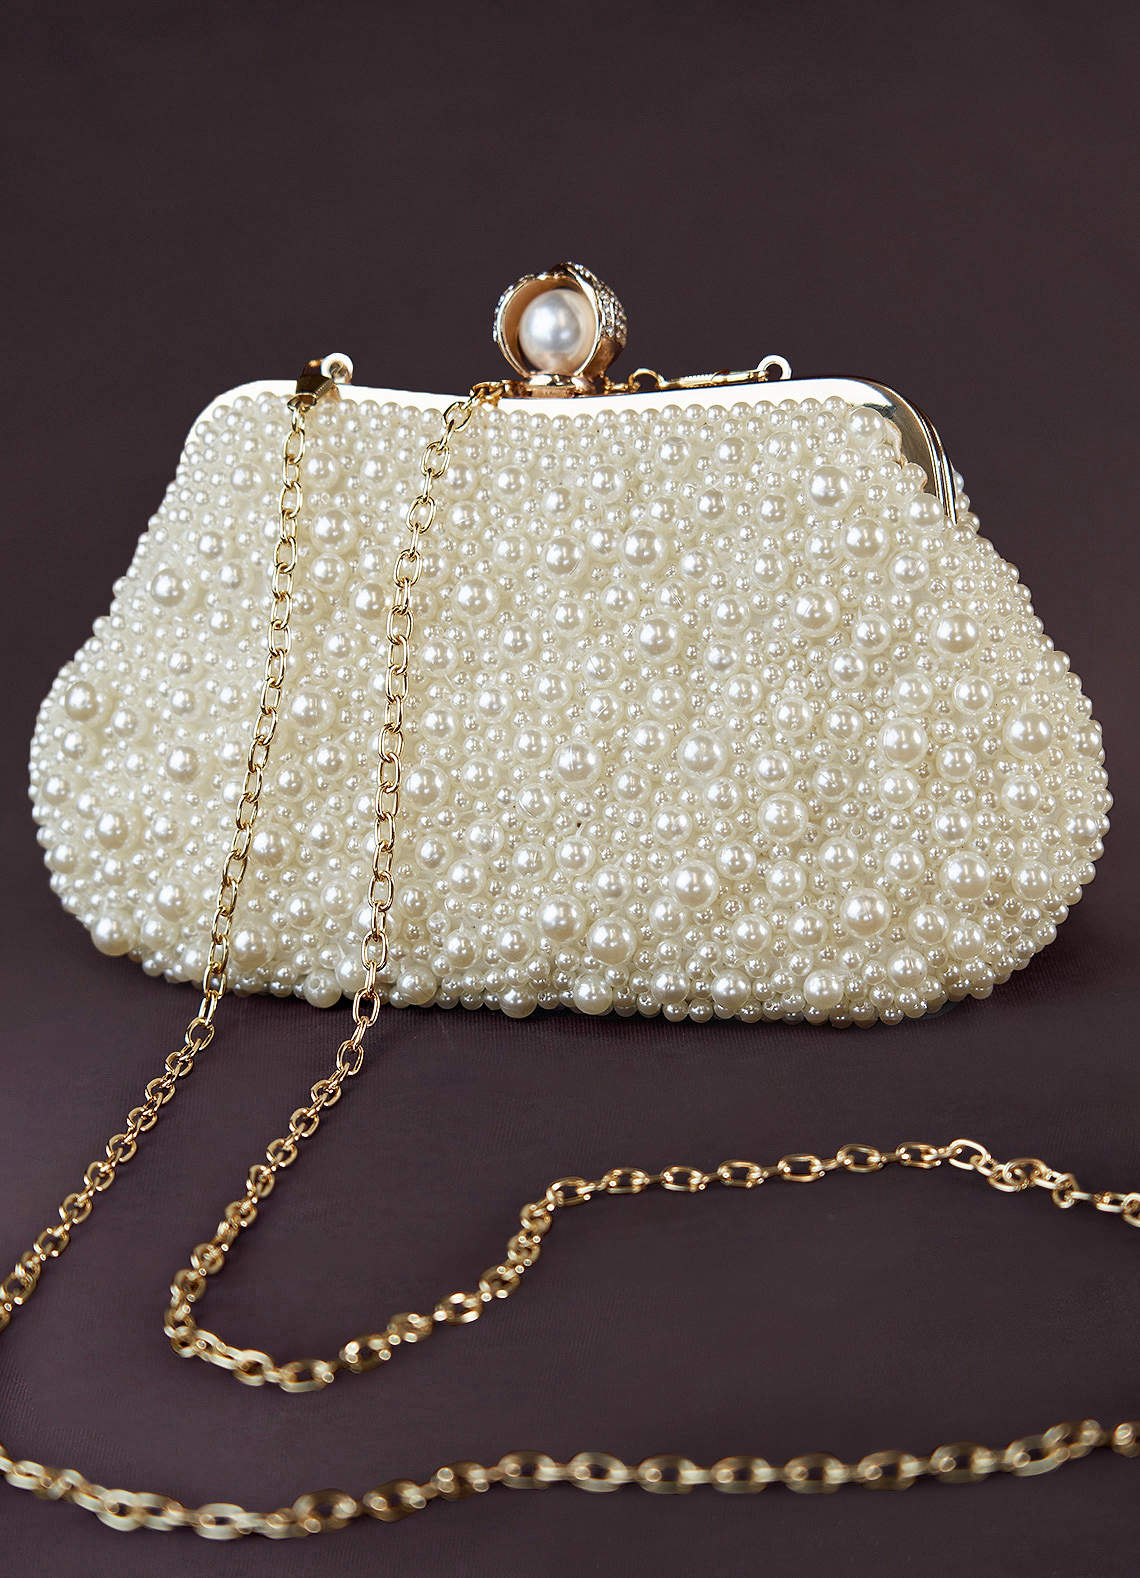 Diamond Clutch Purse And Handbag With Rhinestone Women's Party Evening Bag  Luxury Wedding Clutch Female Shoulder Bag Bolso